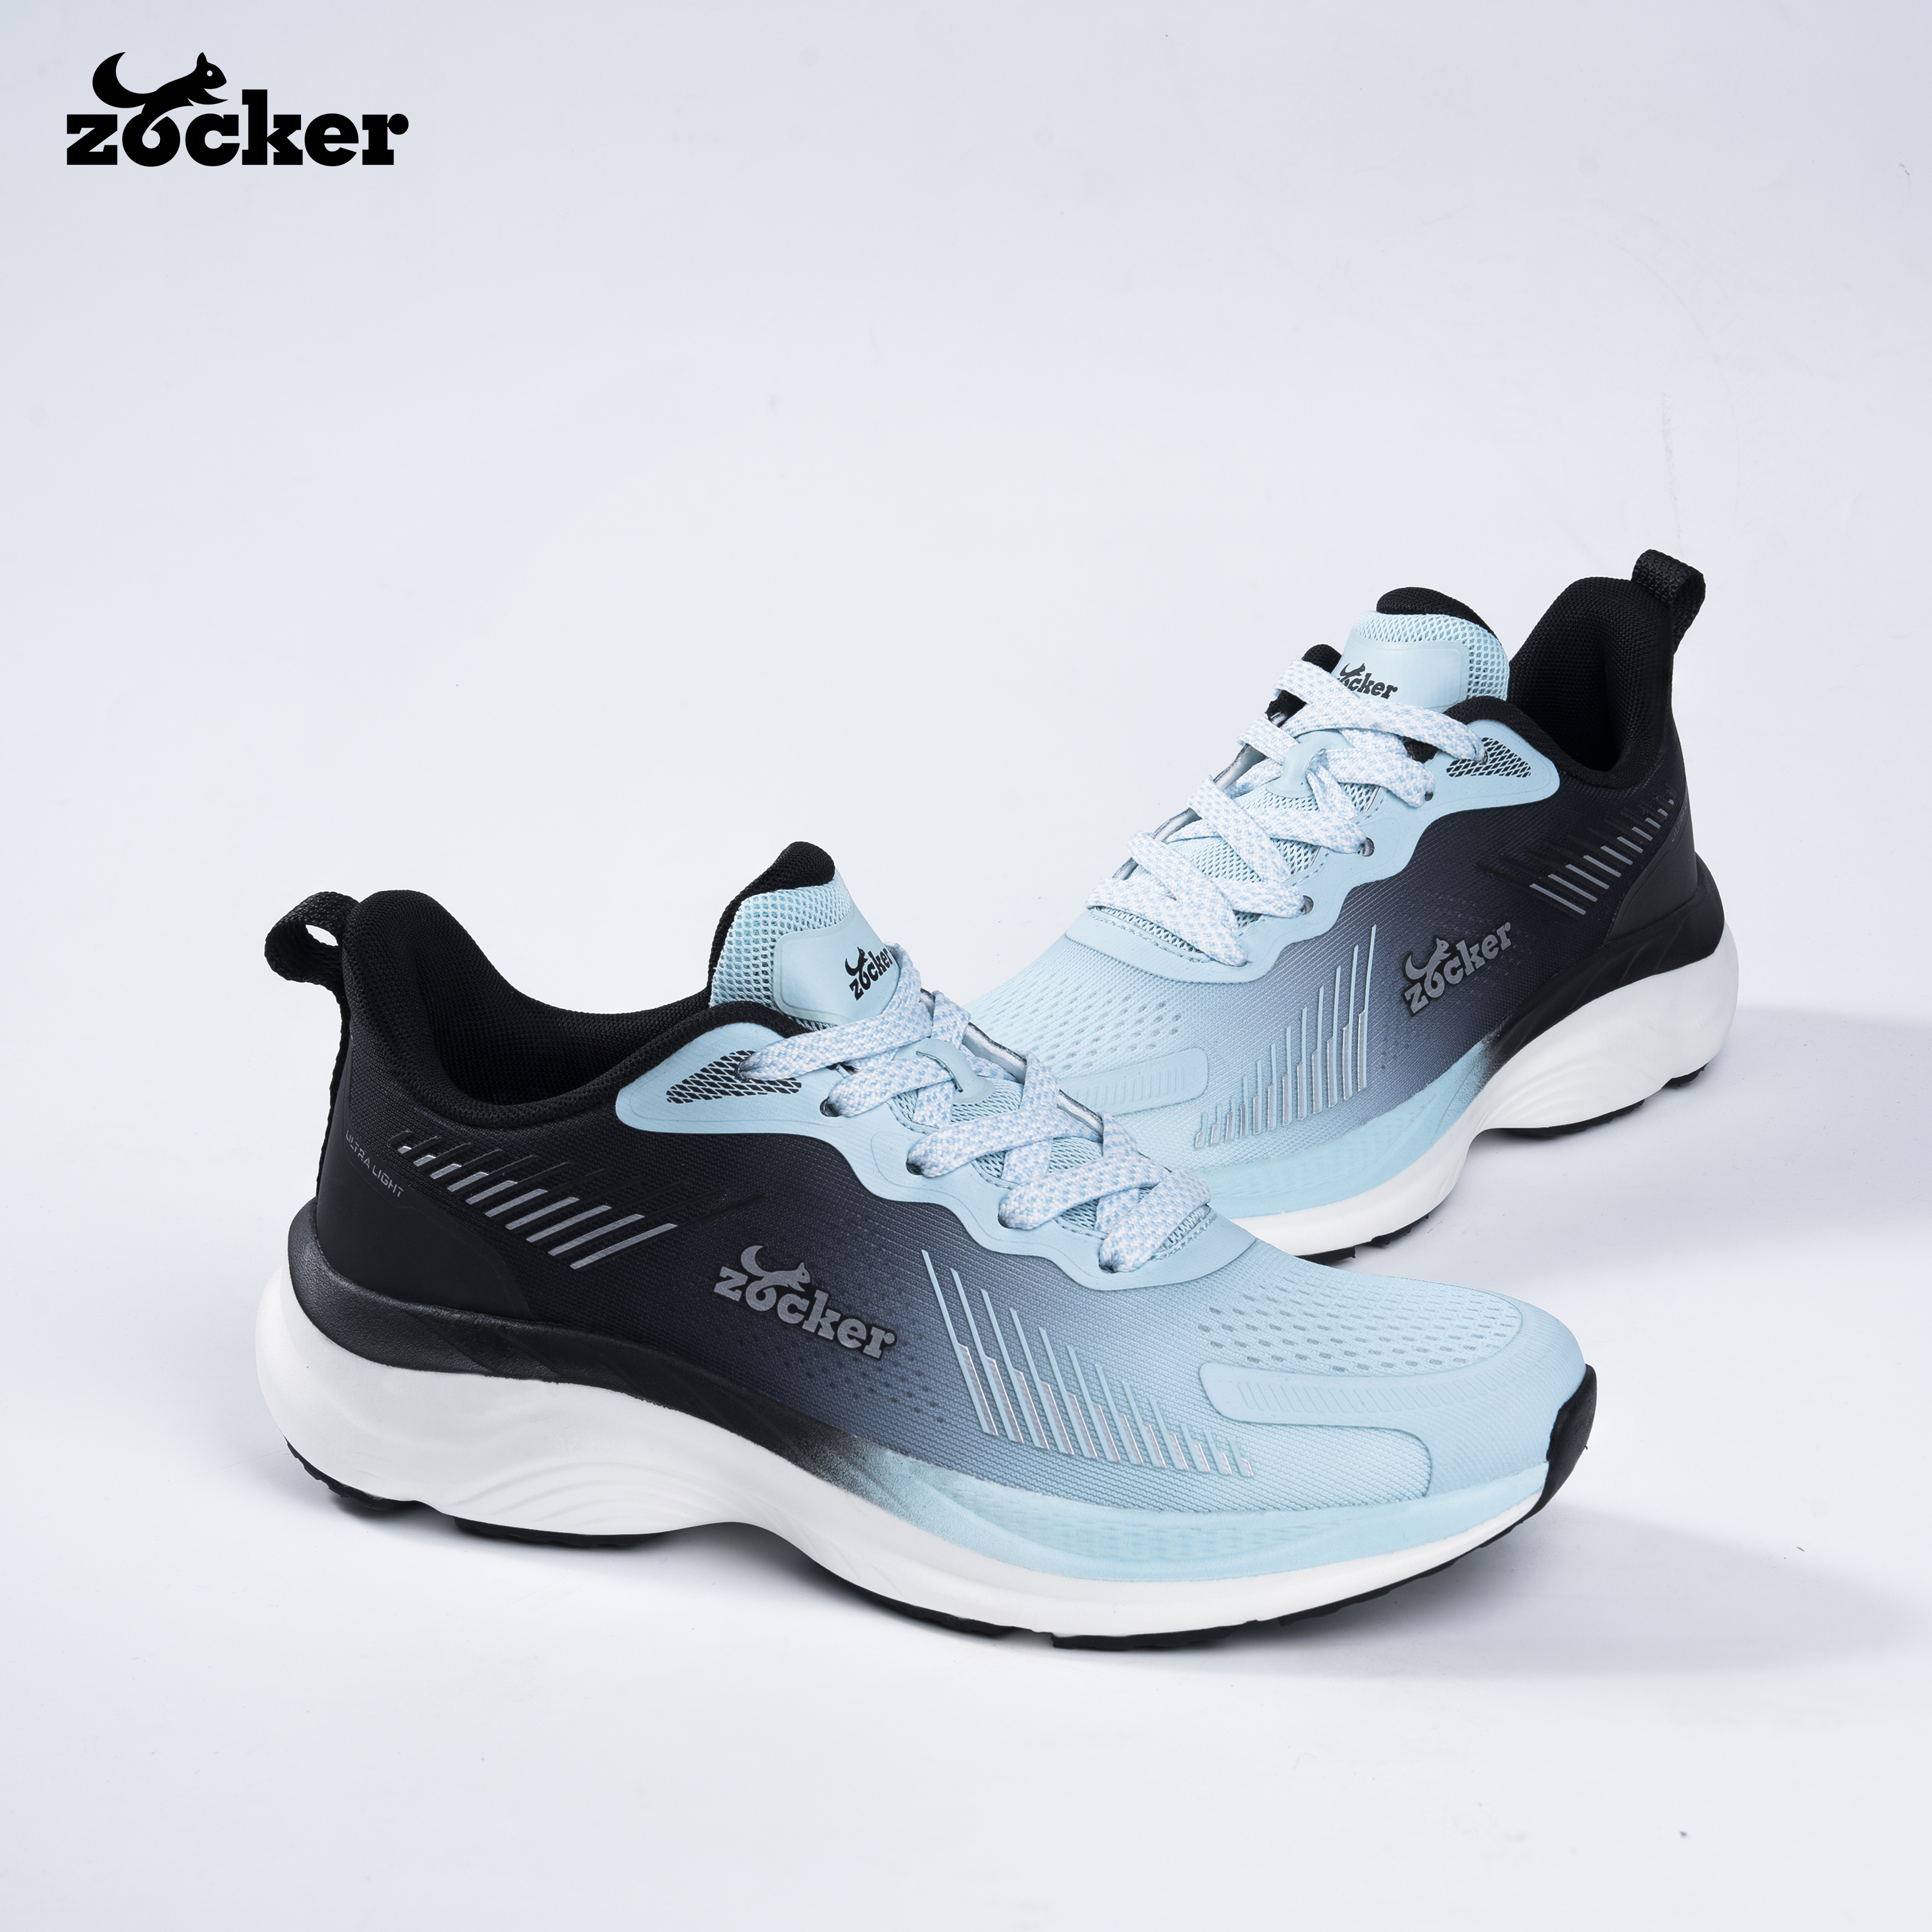 Giày Chạy Bộ Zocker Ultra Light Moon/Black - Công Nghệ Light Foam Premium Siêu Nhẹ - Siêu Êm - Siêu Nảy - Tặng kèm vệ sinh giày